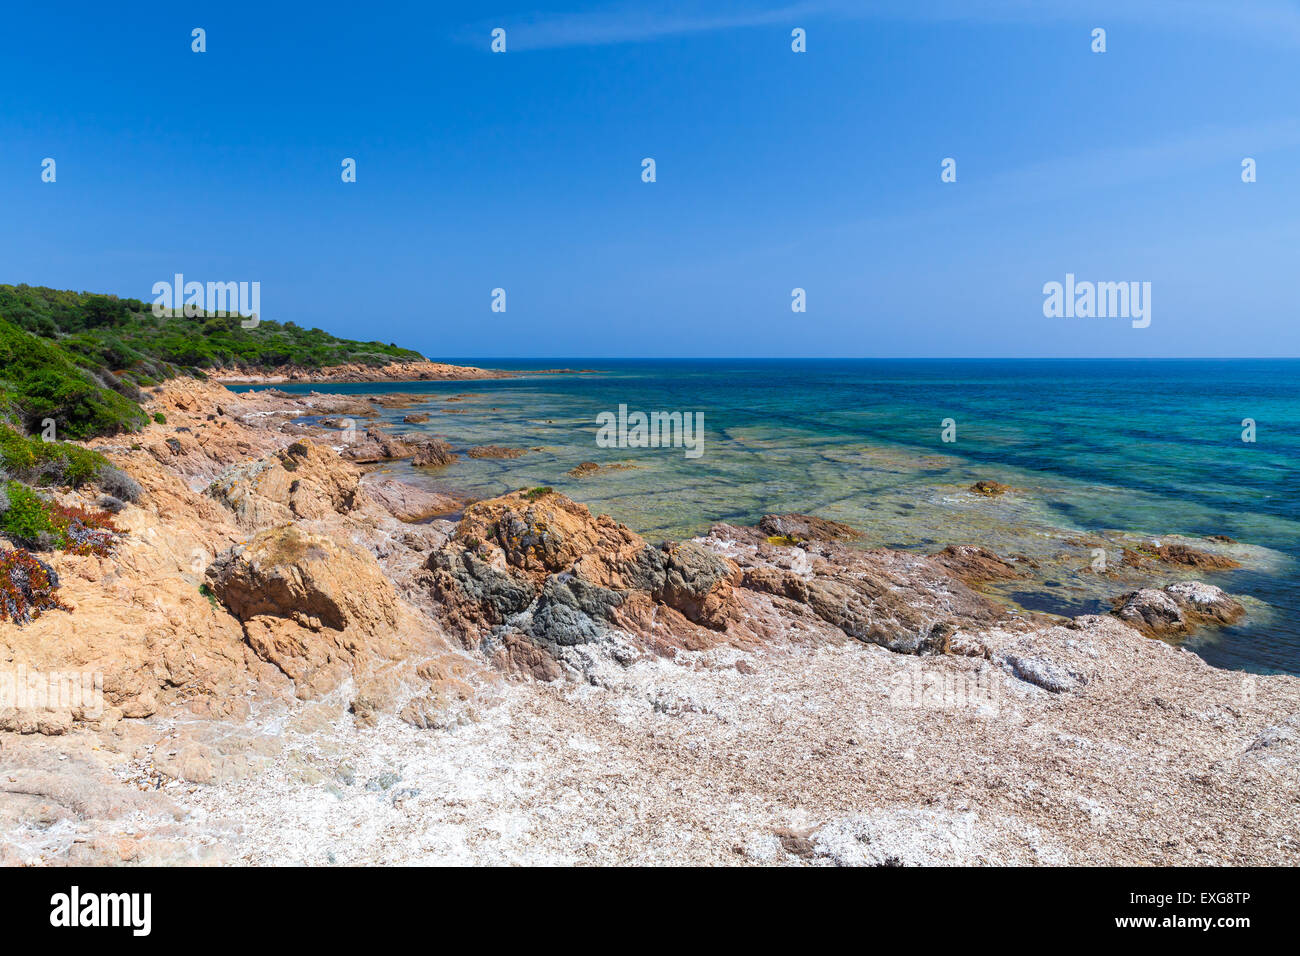 Coastal landscape with rocky wild beach, Corsica, France. Plage De Capo Di Feno Stock Photo